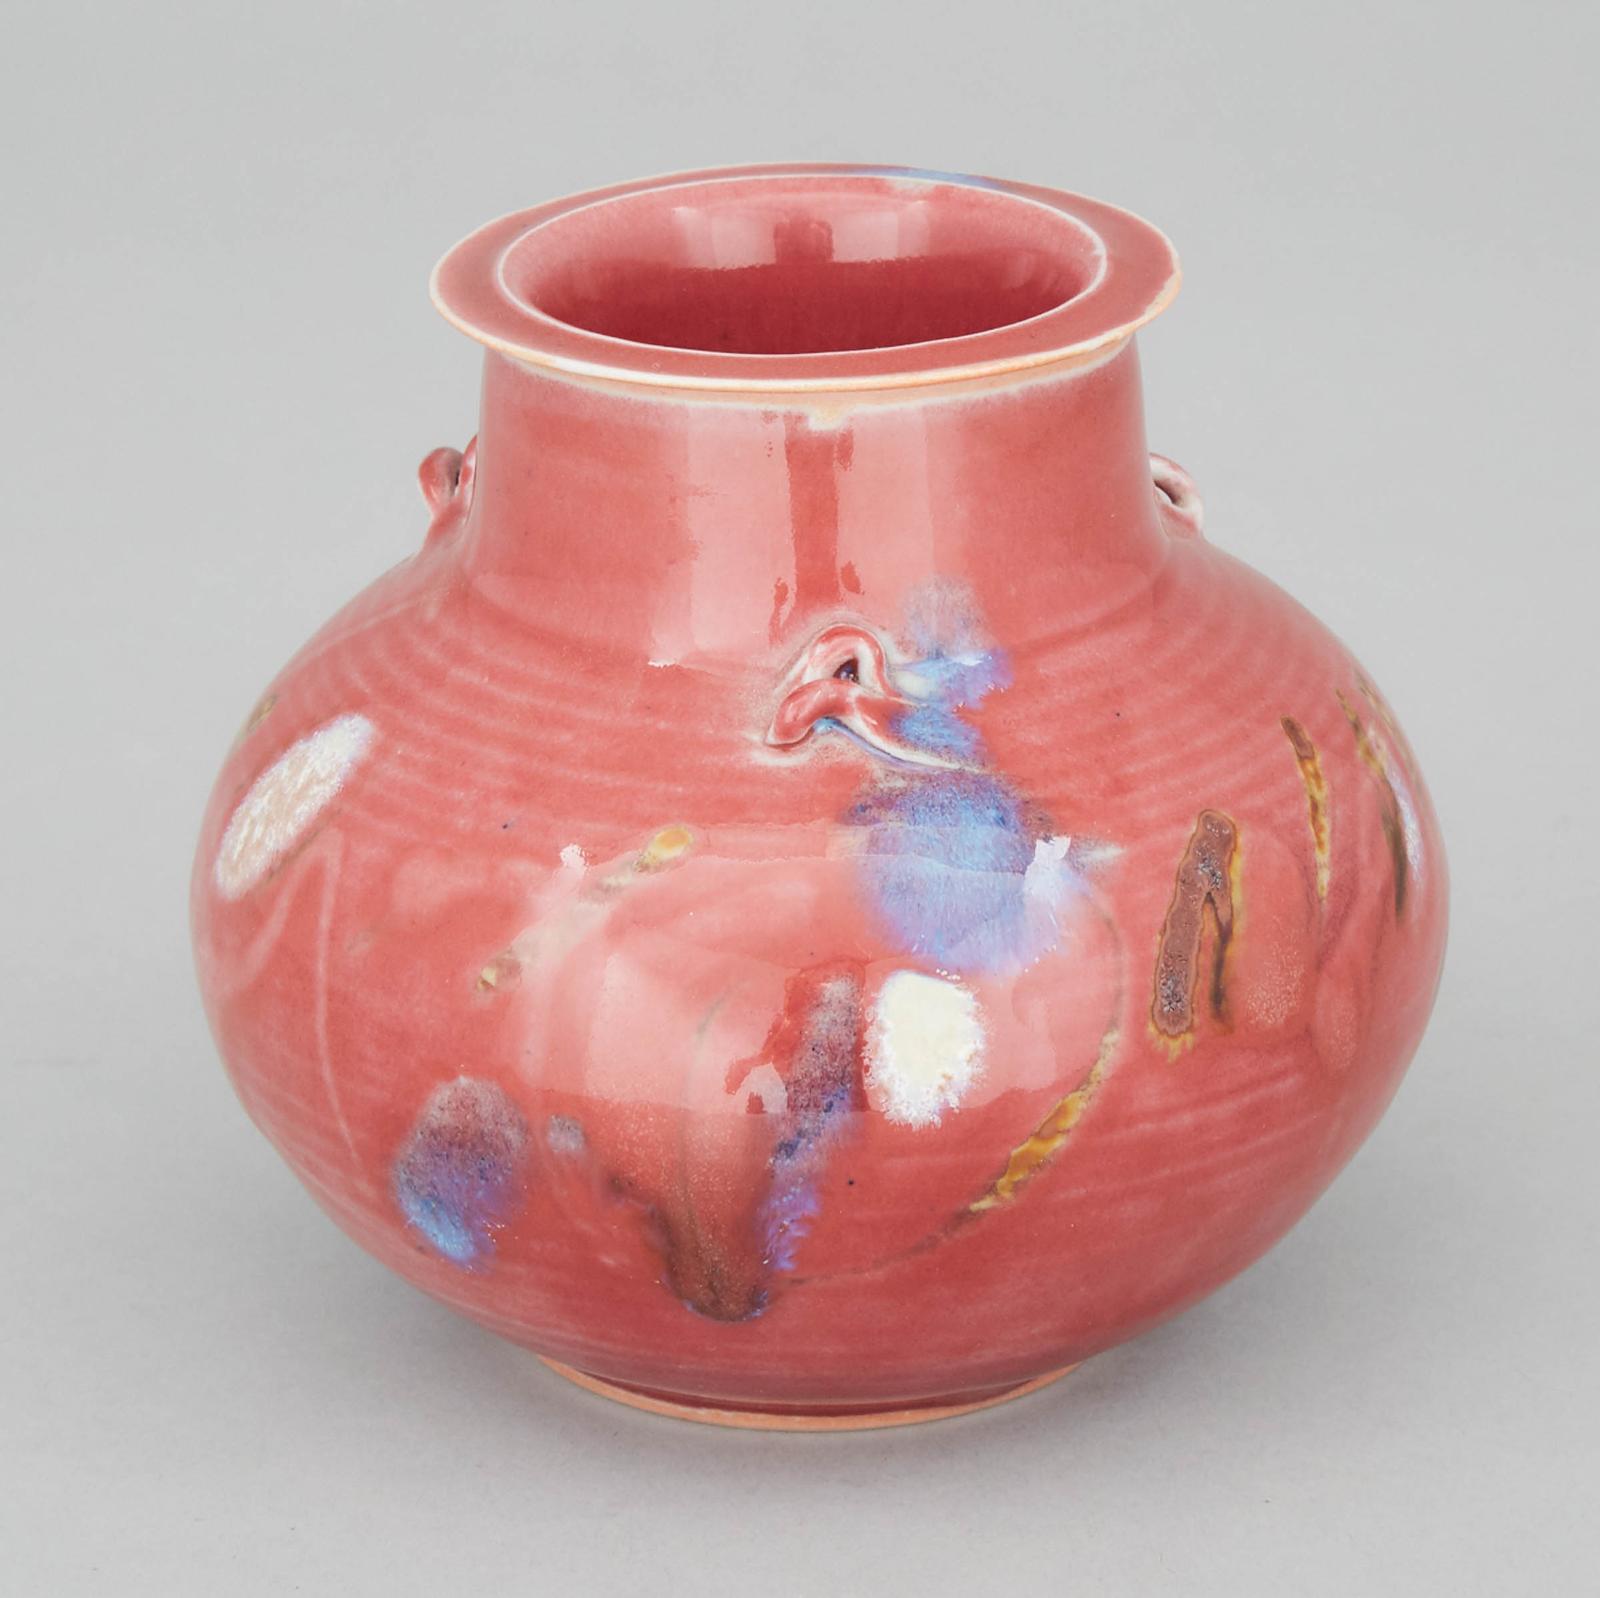 Kayo O'young (1950) - Small Covered Jar, 1994